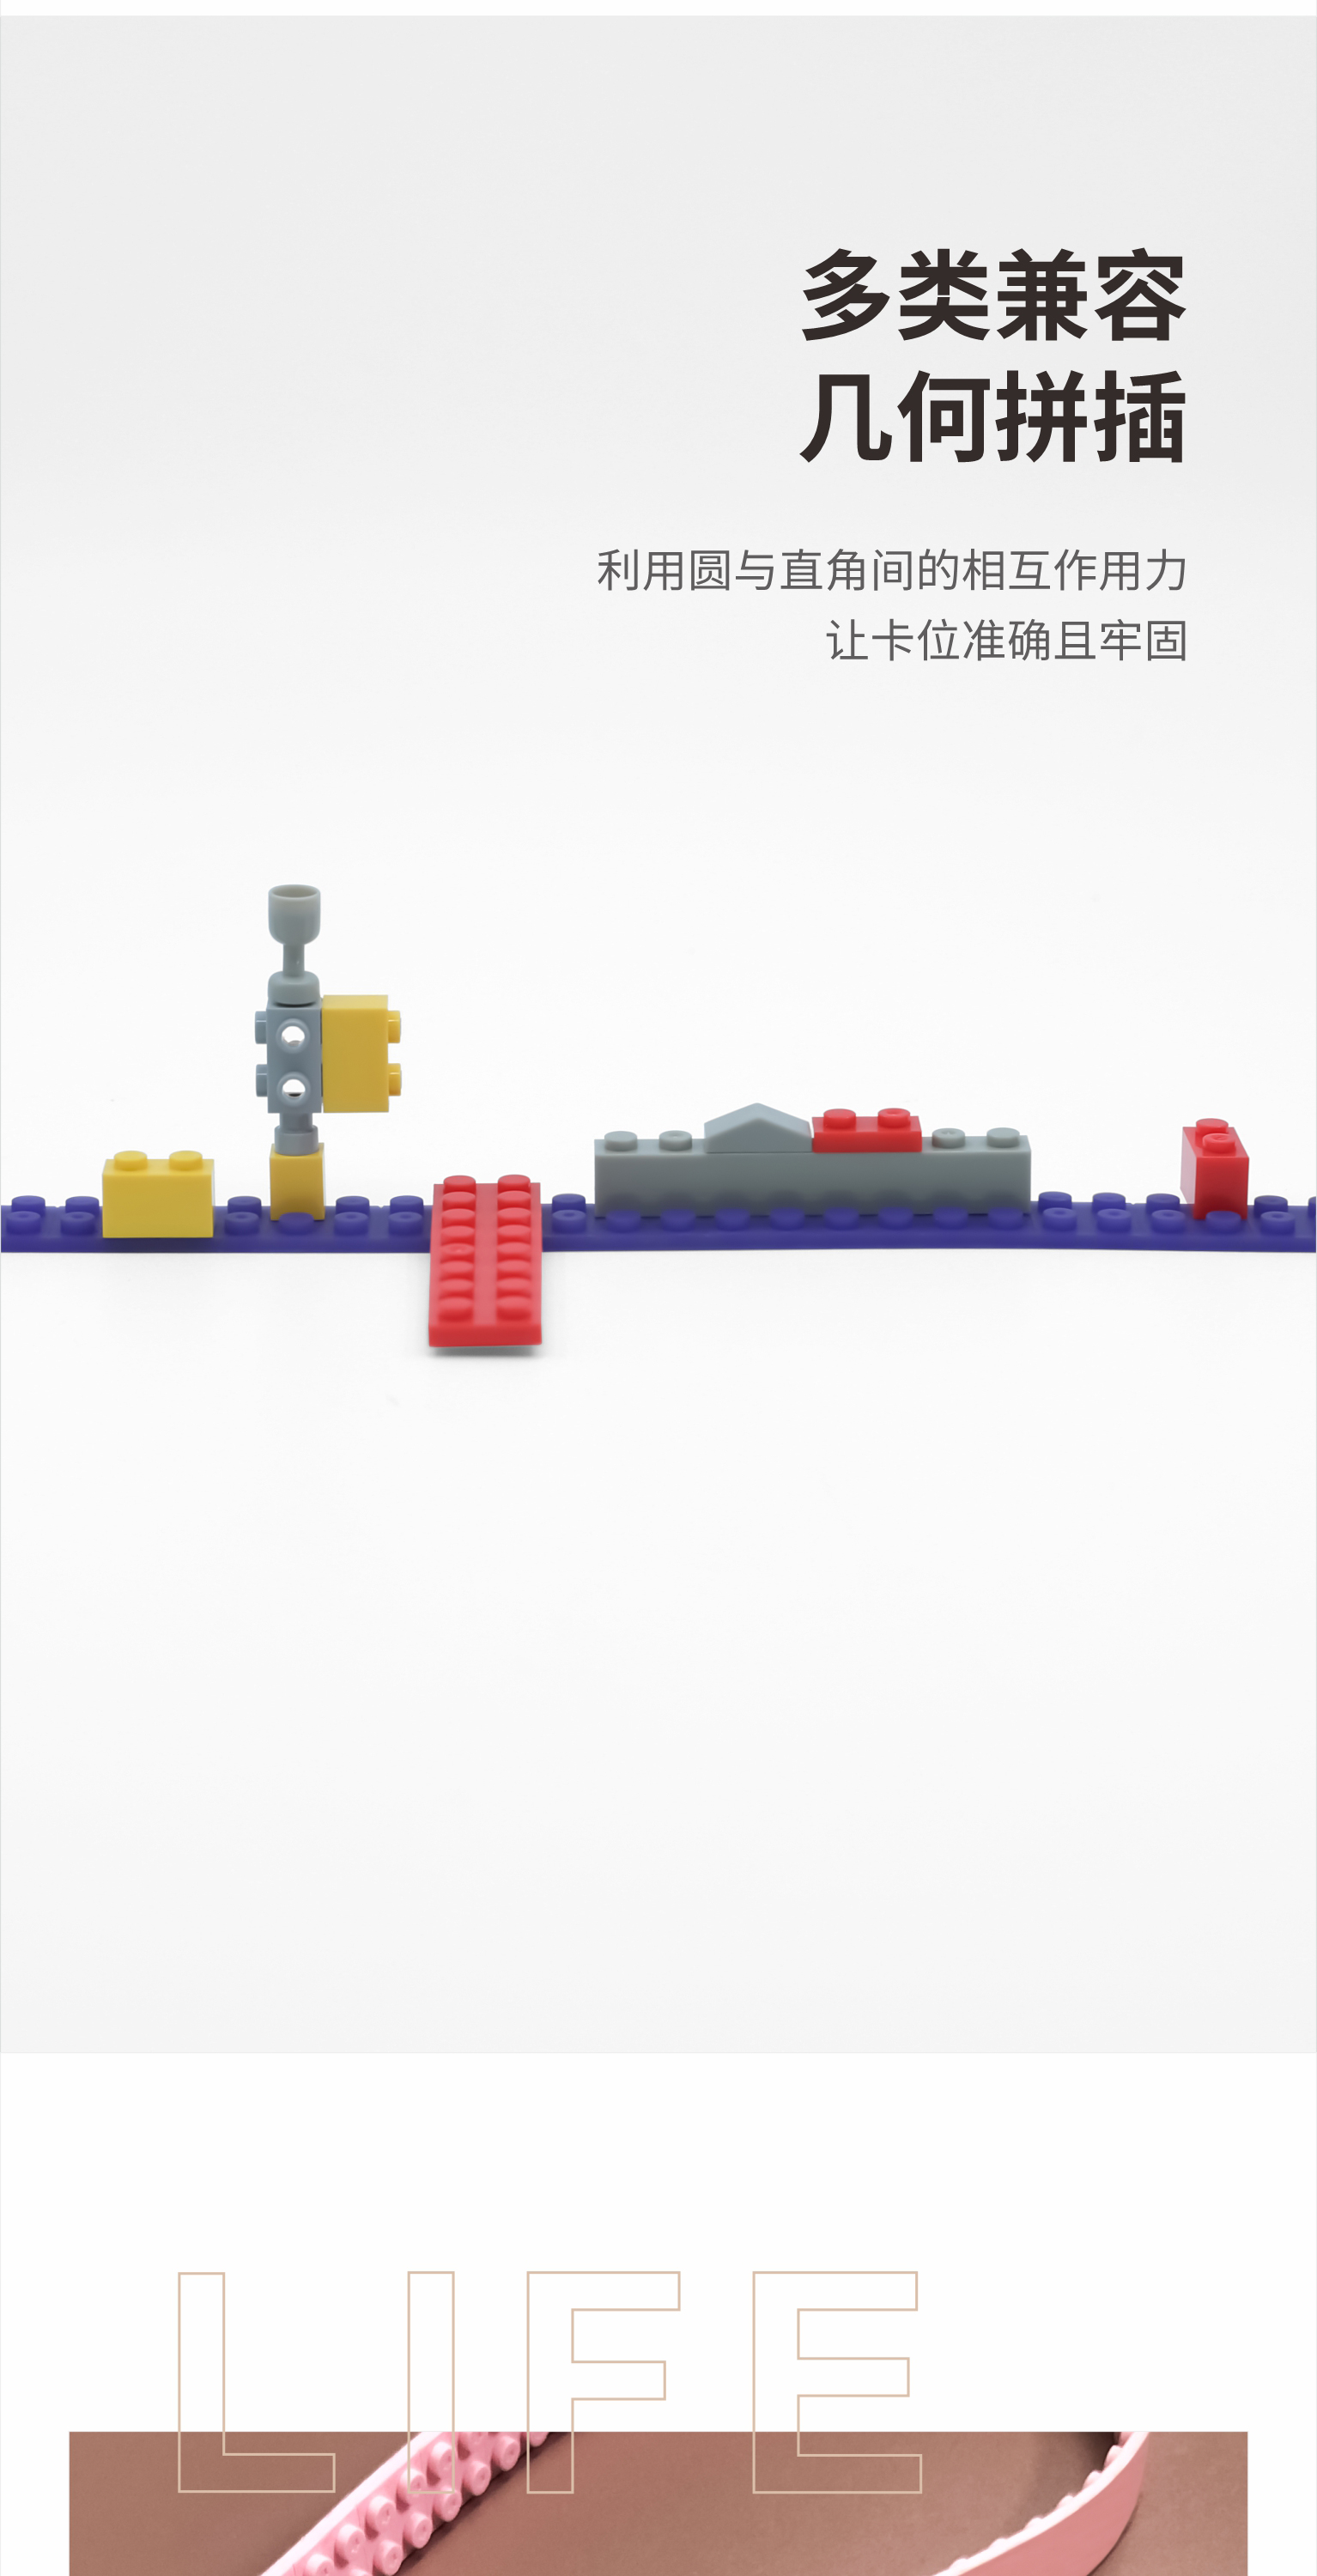 硅胶乐高积木垫|乐高积木带|硅胶乐高积木玩具-深圳乐高积木定制批发厂家(图8)